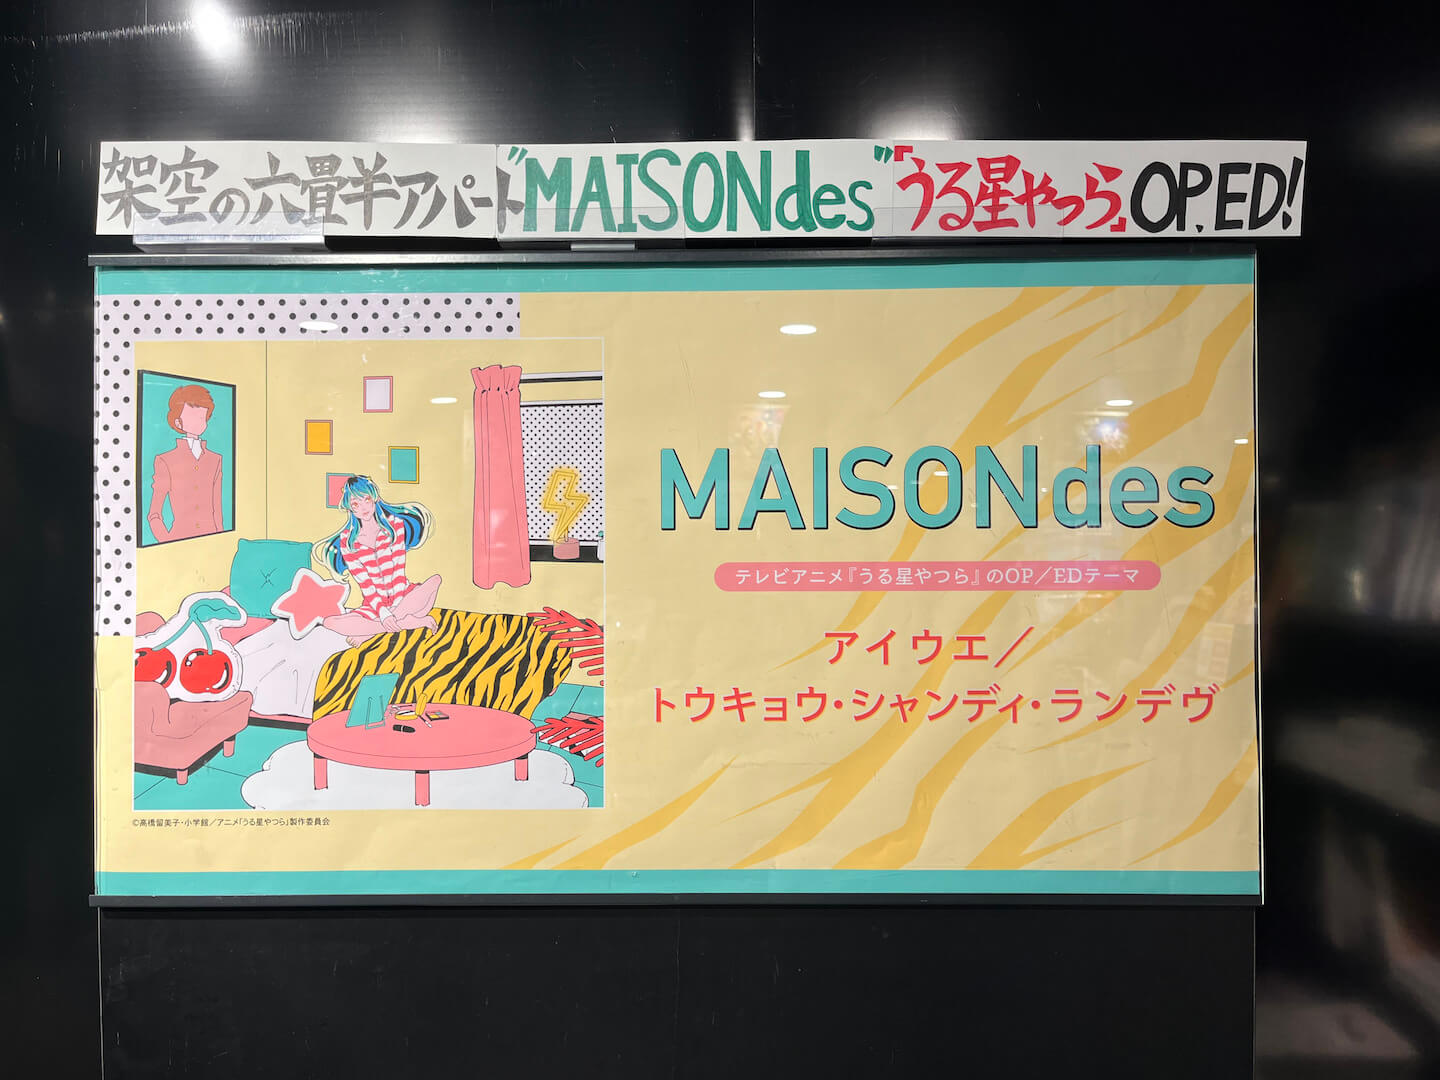 【レポート】ラムちゃん「1月15日から入居したいっちゃ」──解明！渋谷に現れたMAISONdesの巨大広告の謎 music230115_maisondes_3-1